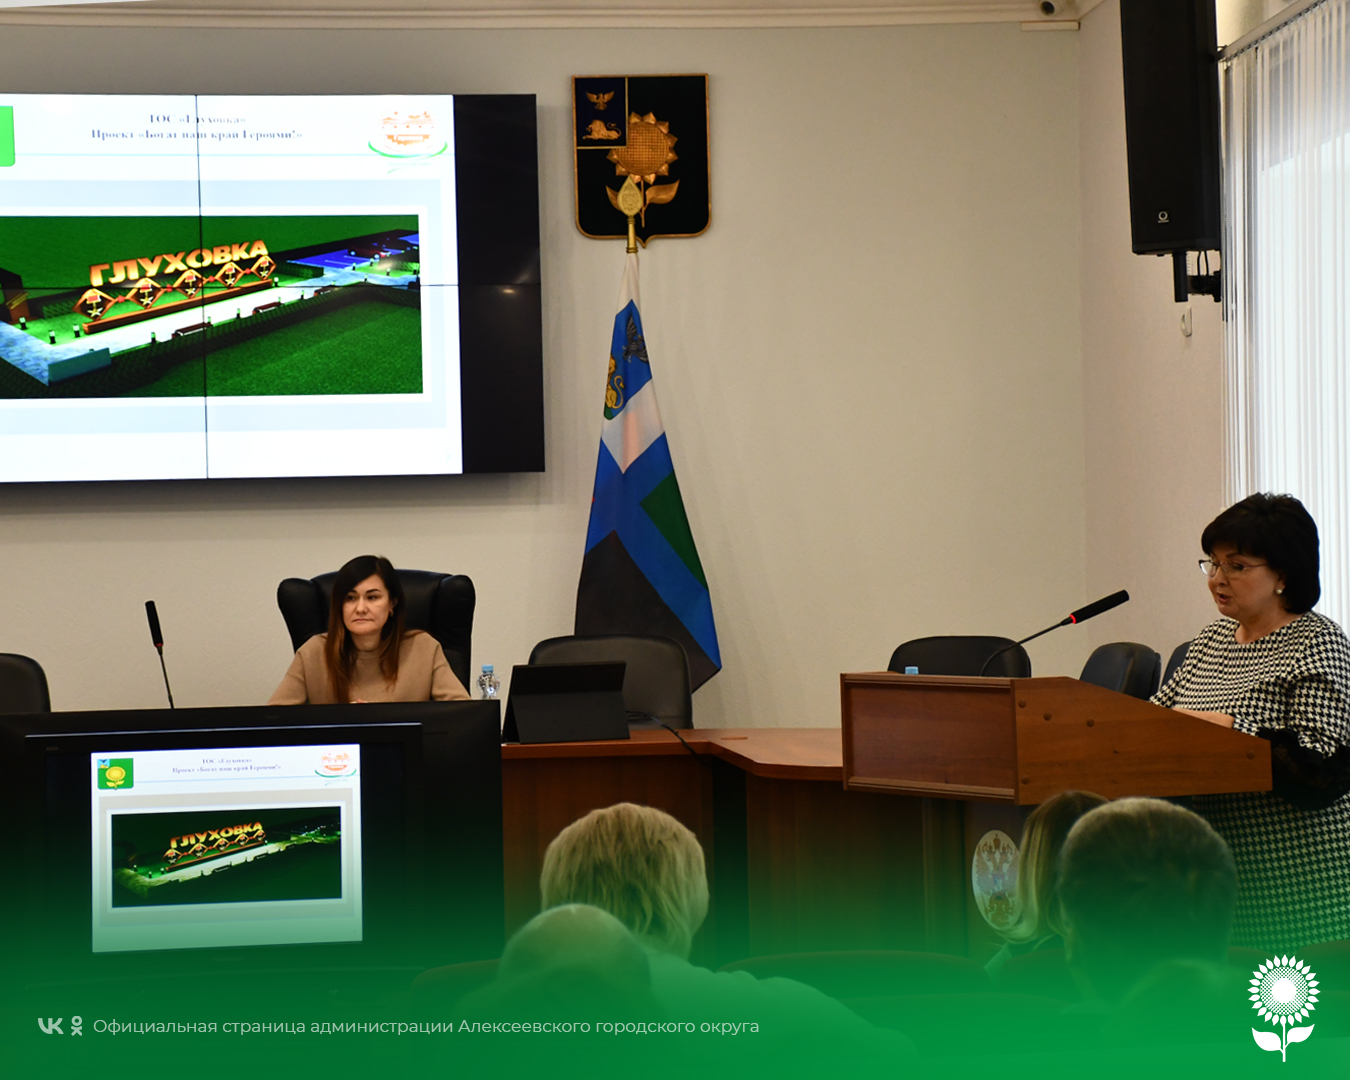 В Алексеевке состоялся форум, посвященный реализации гражданских инициатив на территории Алексеевского городского округа.